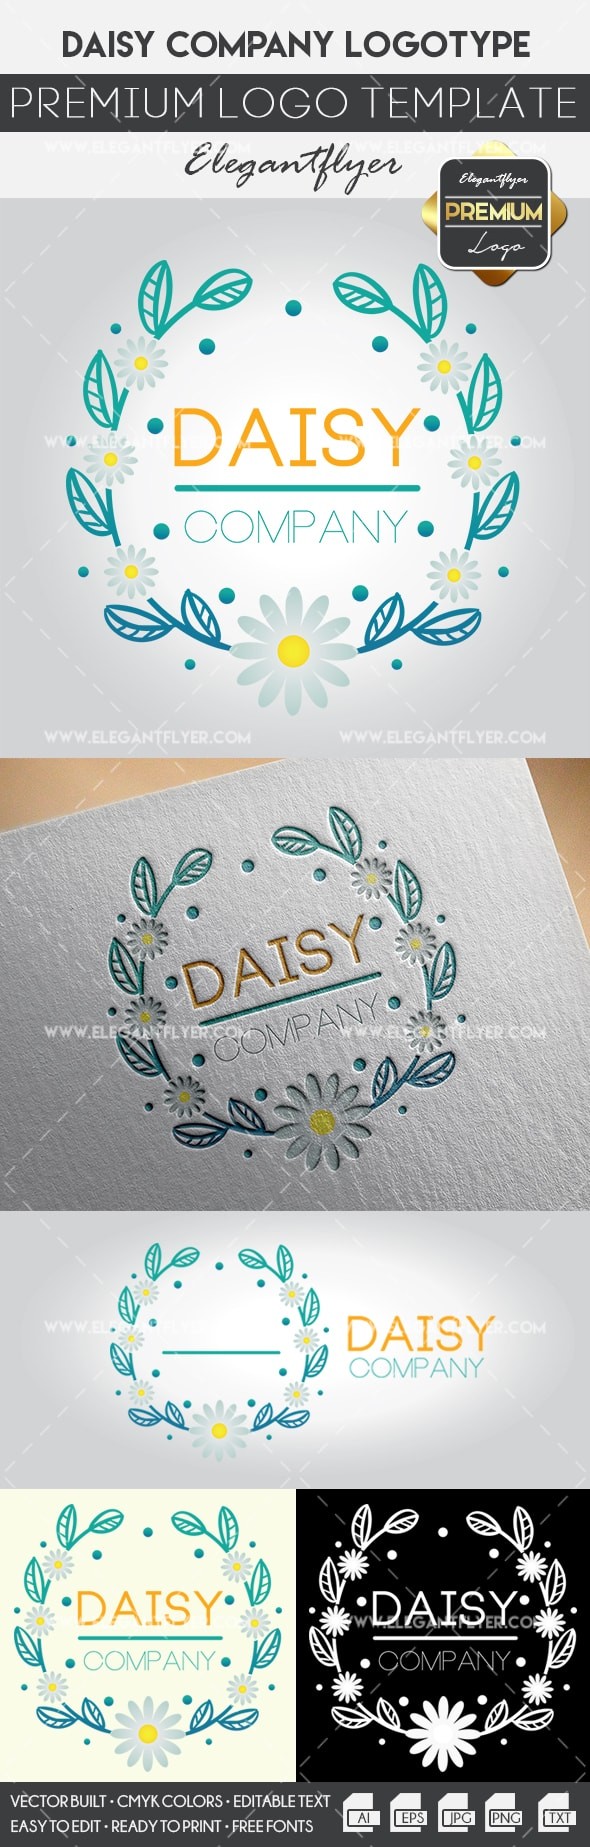 Daisy Company by ElegantFlyer